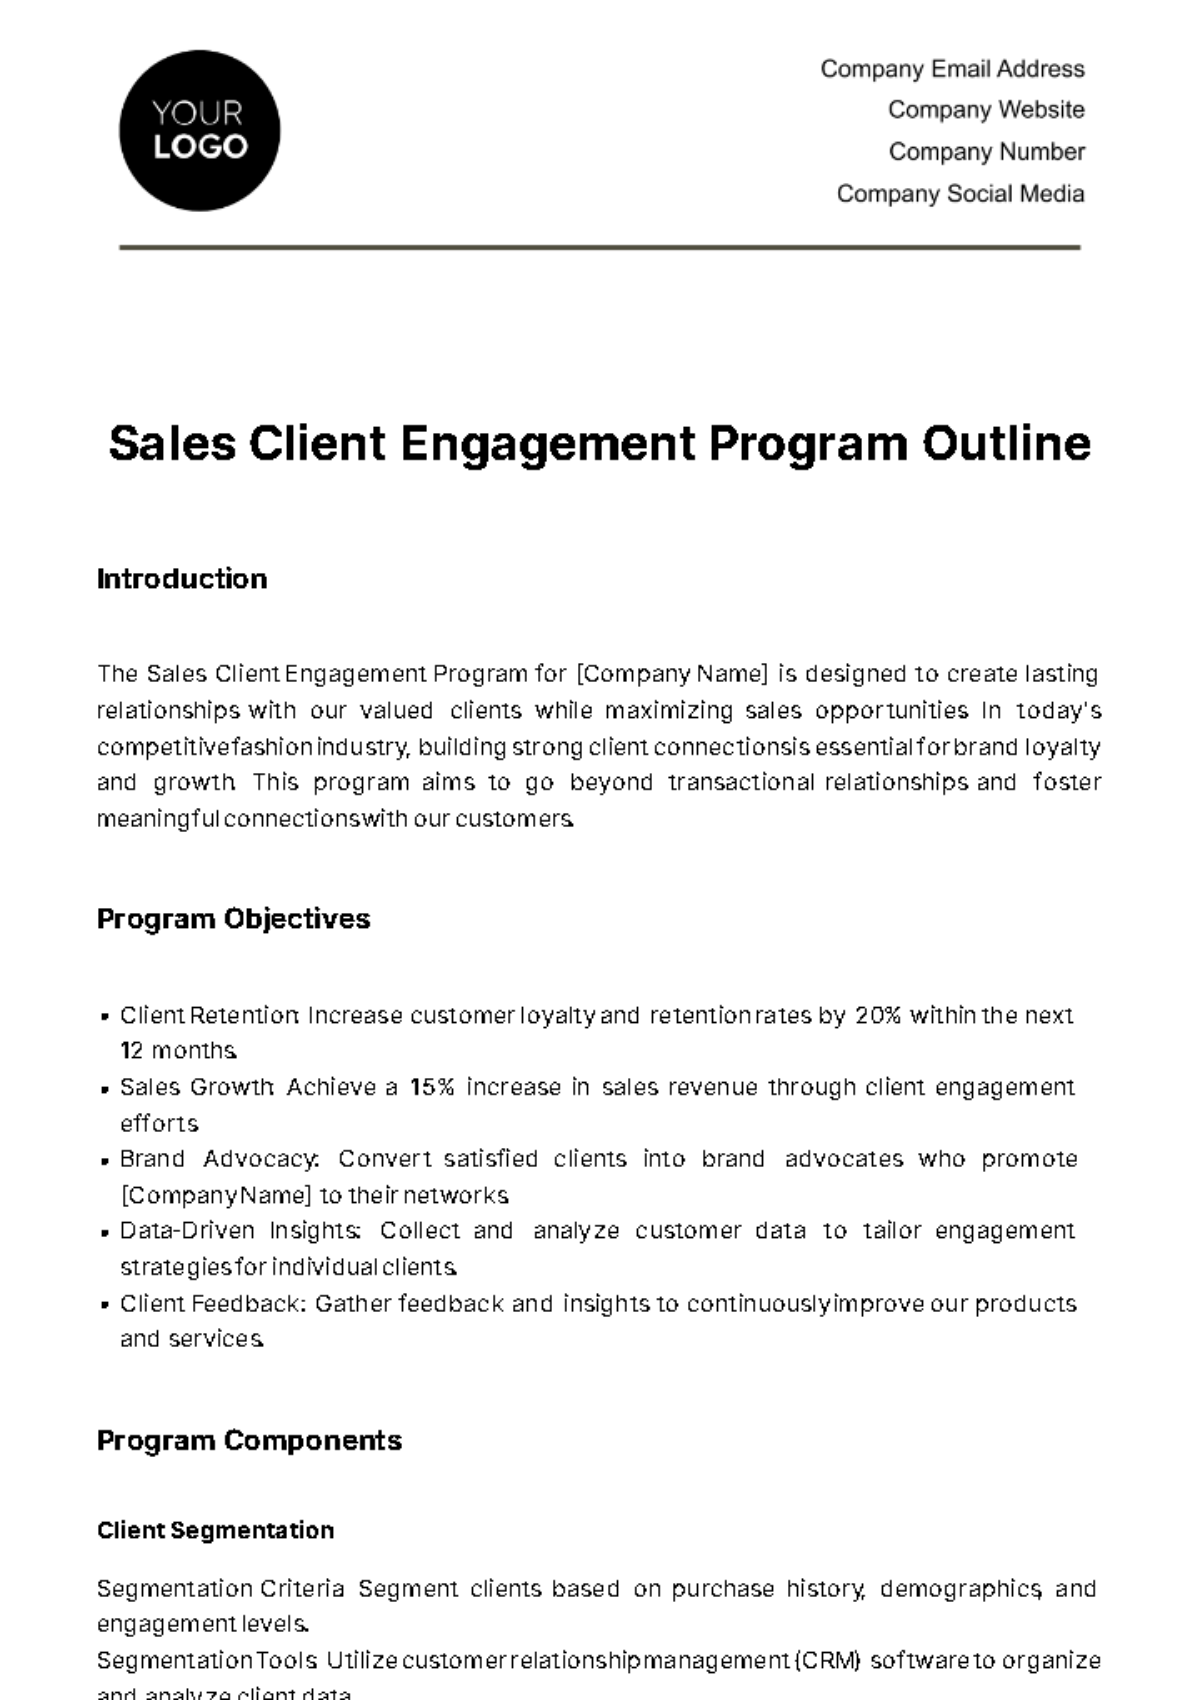 Free Sales Client Engagement Program Outline Template